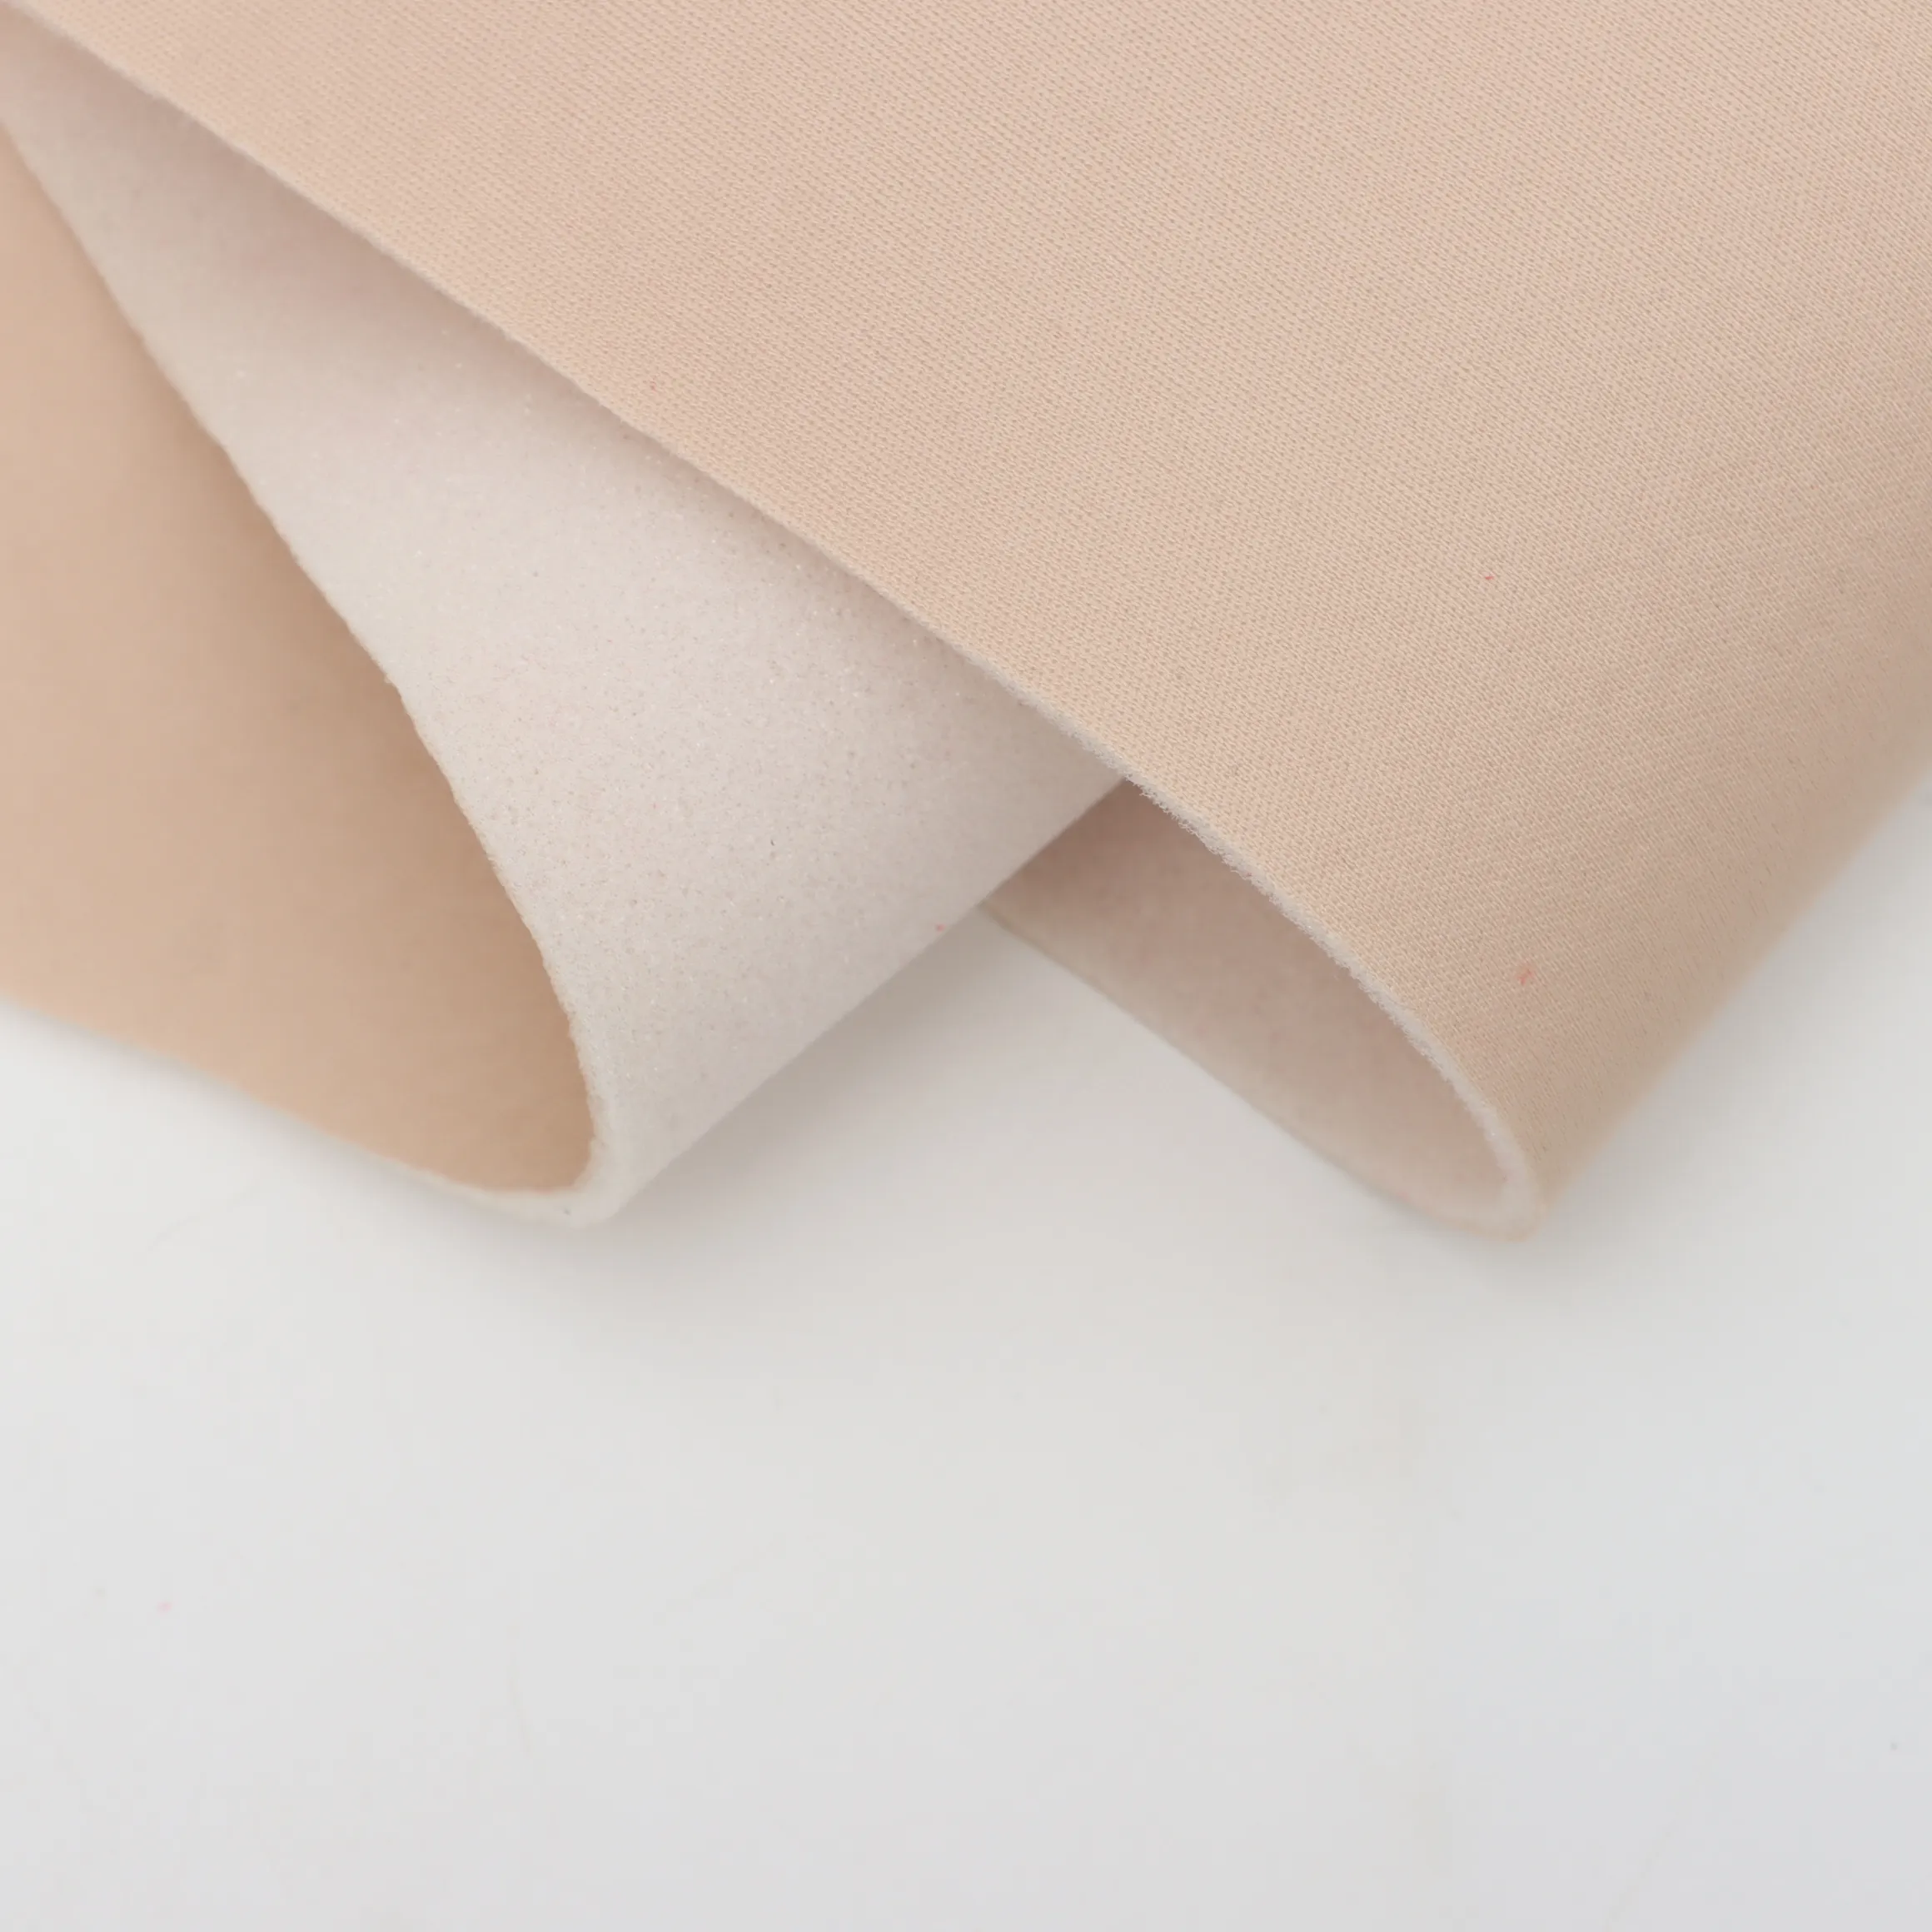 Tecido de malha resistente à abrasão, tecido de esponja composto mais vendido para a pele, com ampla gama de usos